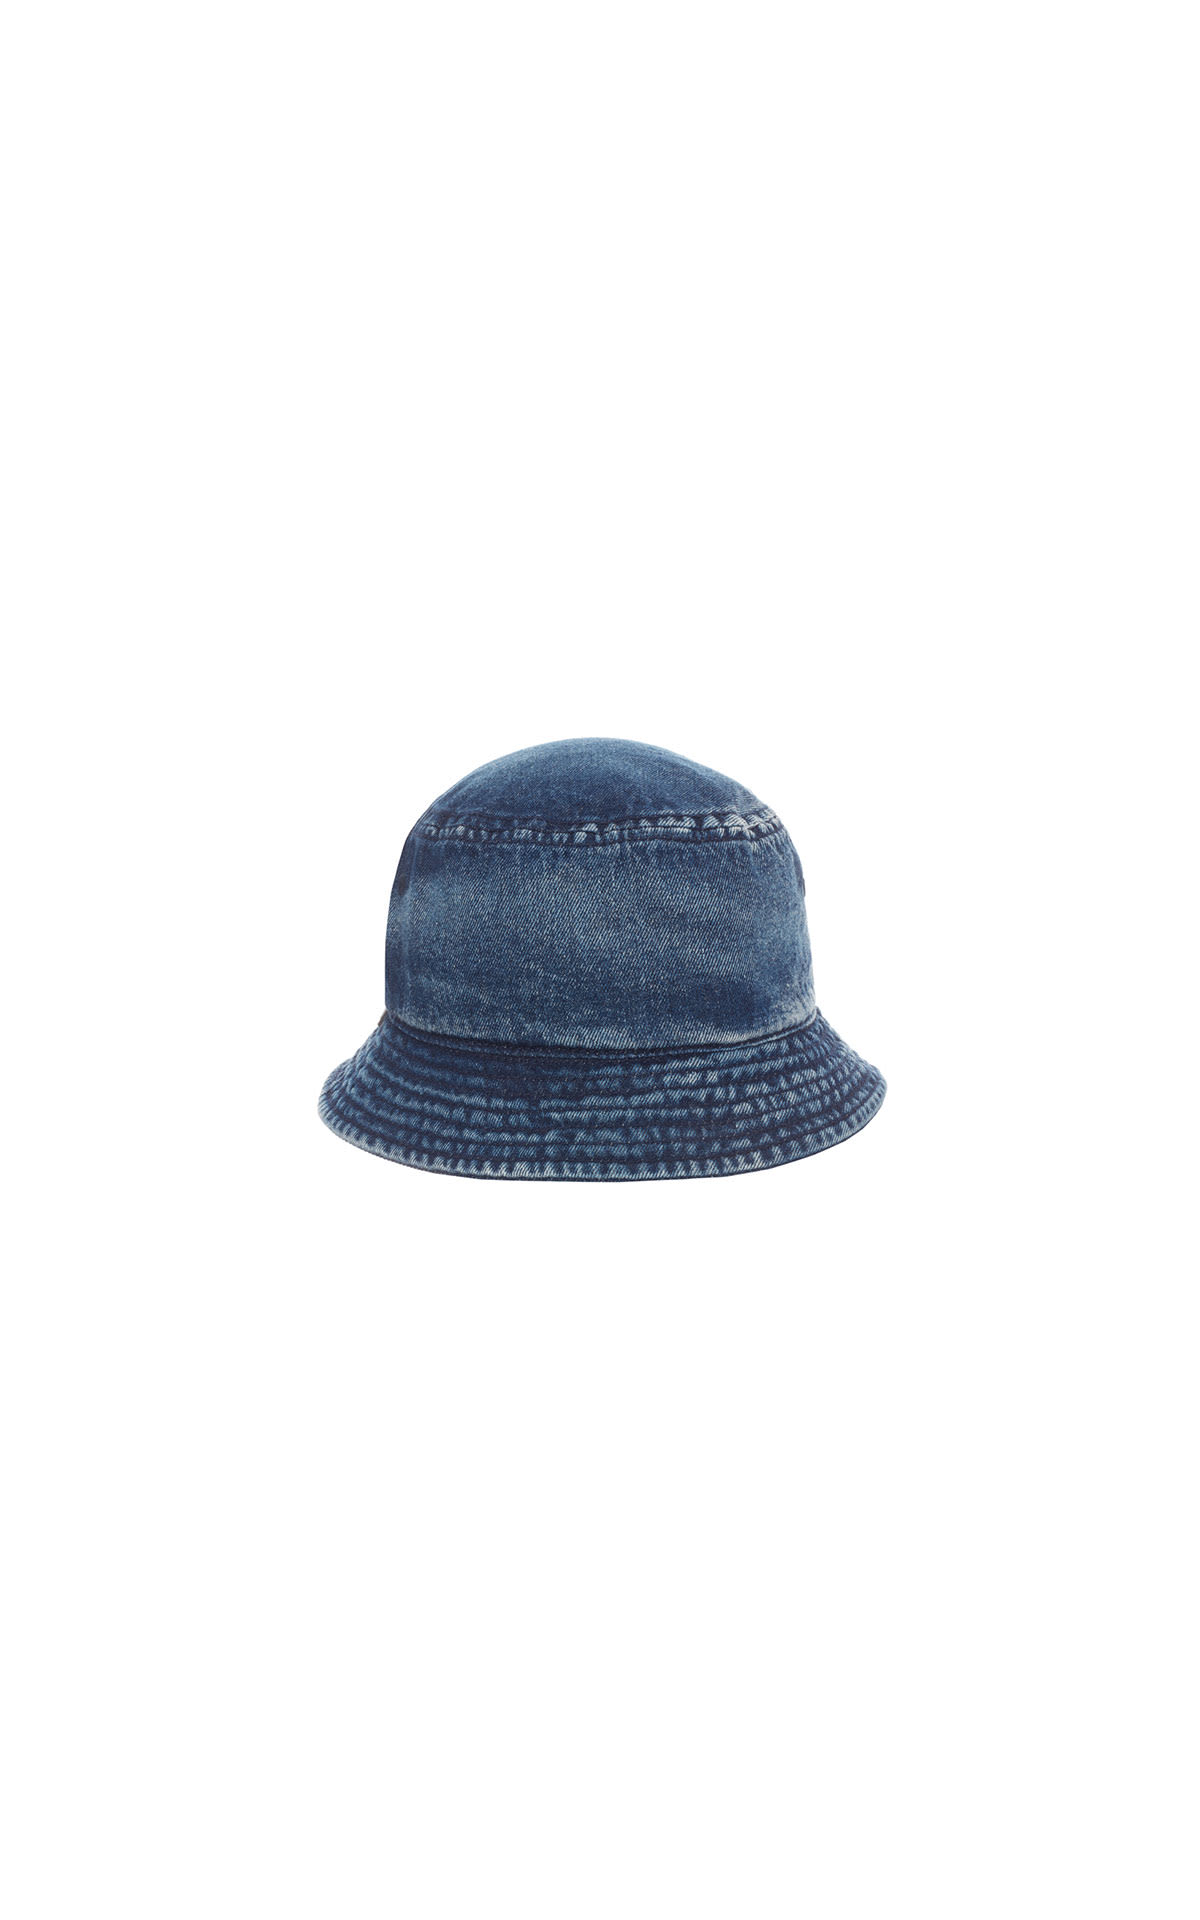 Diesel Denim bucket hat from Bicester Village